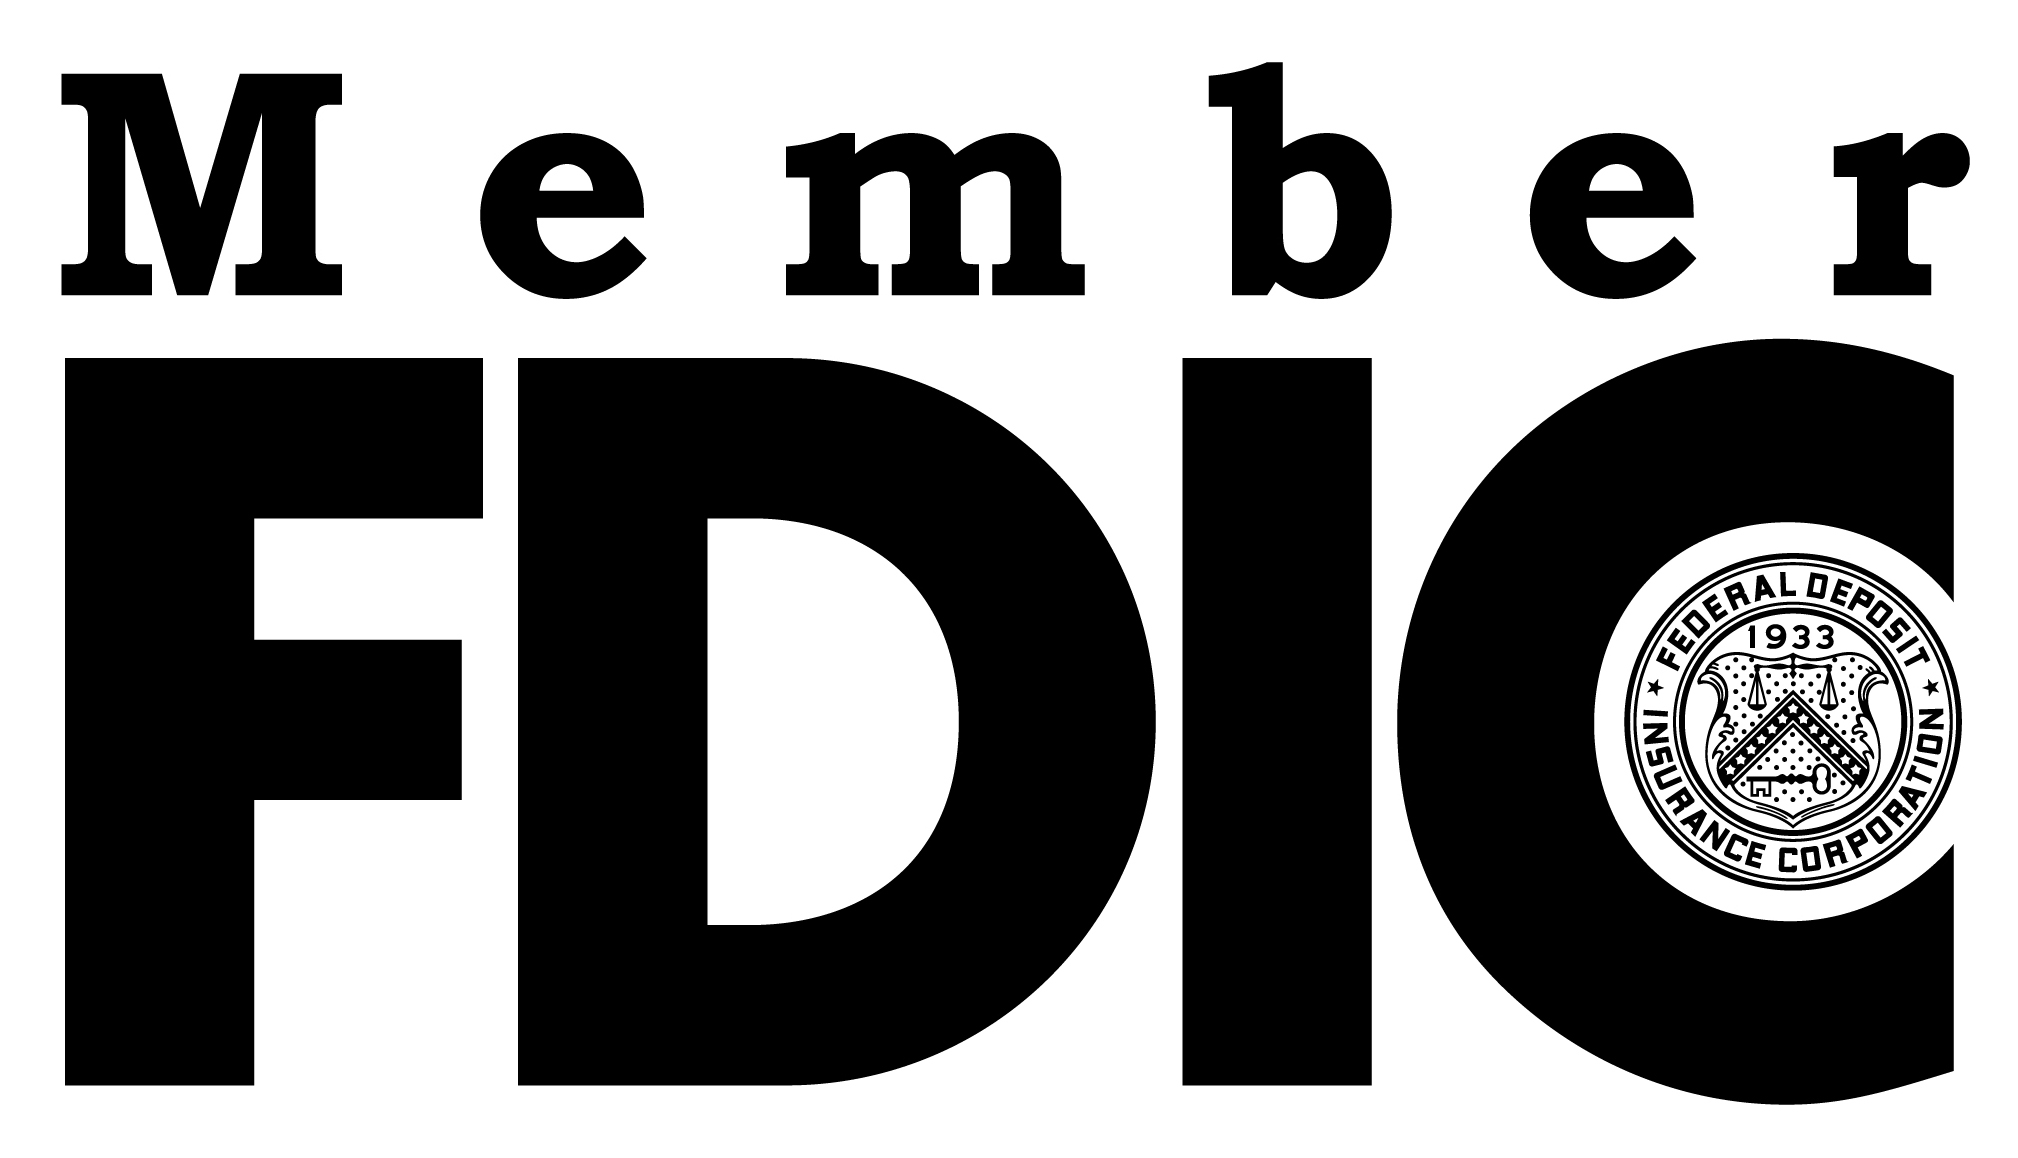 Member FDIC logo.